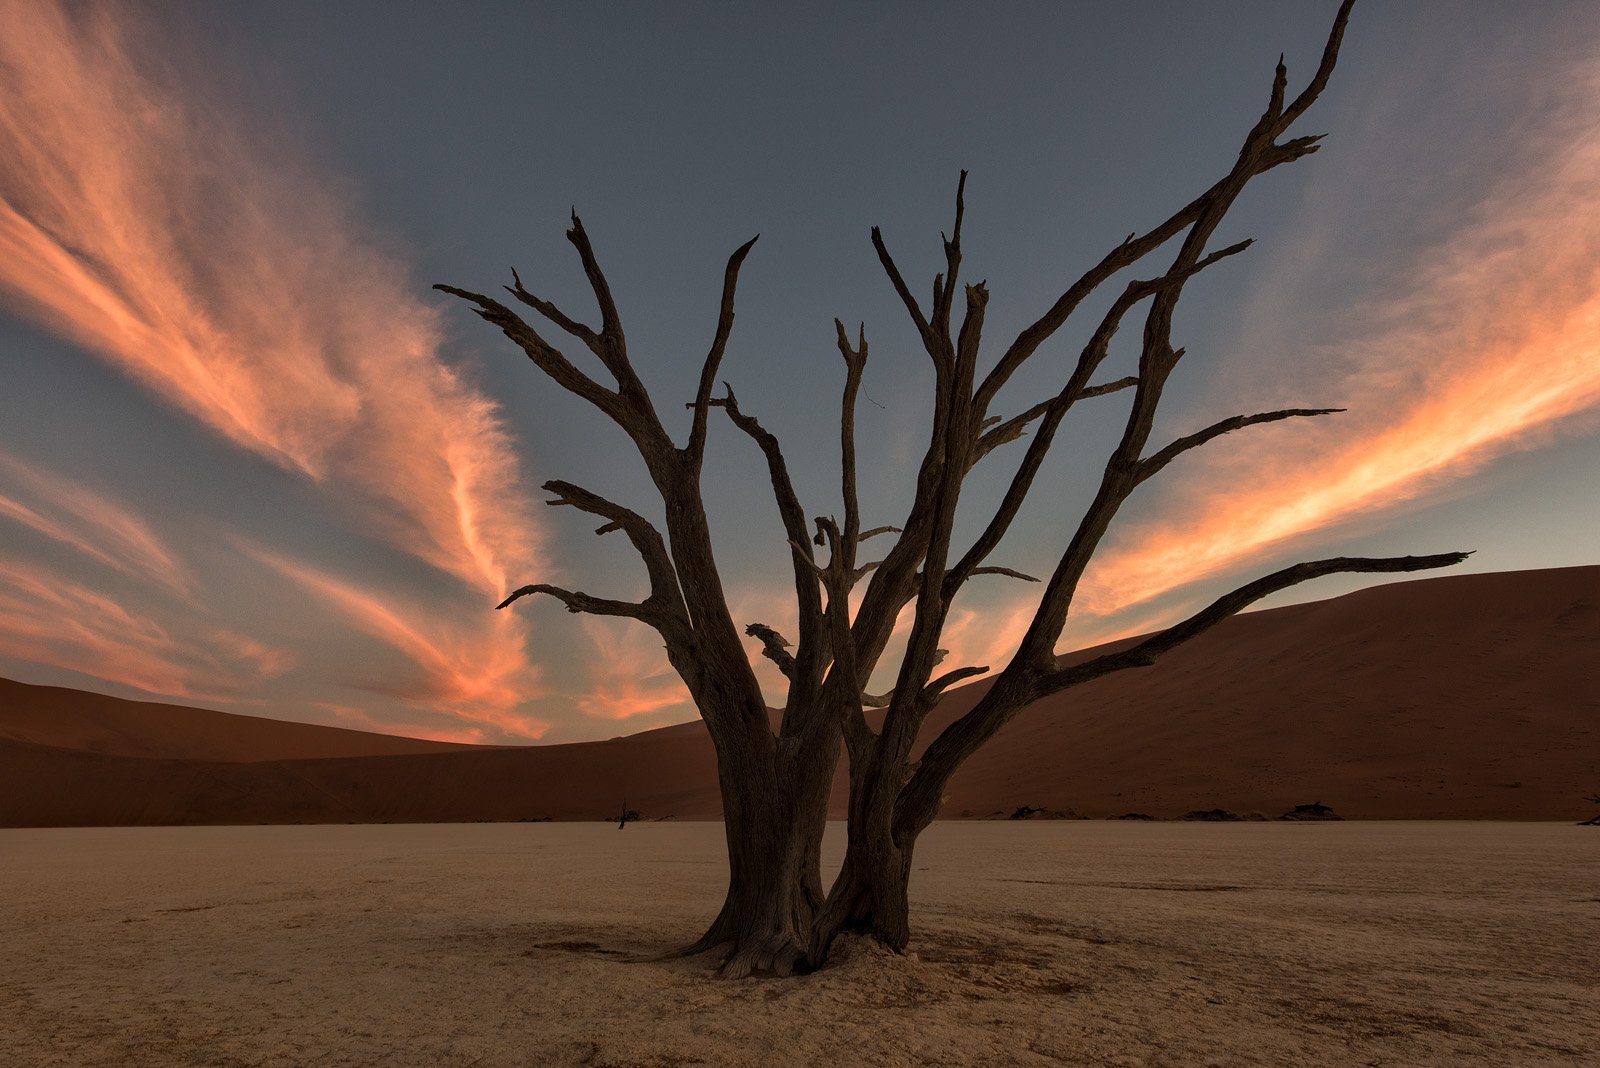 пустыня, песчаные люны, песок, Соссусвлей, Sossusvlei, пустыня Намиб, Намибия, пейзаж, Африка, небо, закат, облака, засуха, безлюдье красота природы, одиночество, Alex Mimo